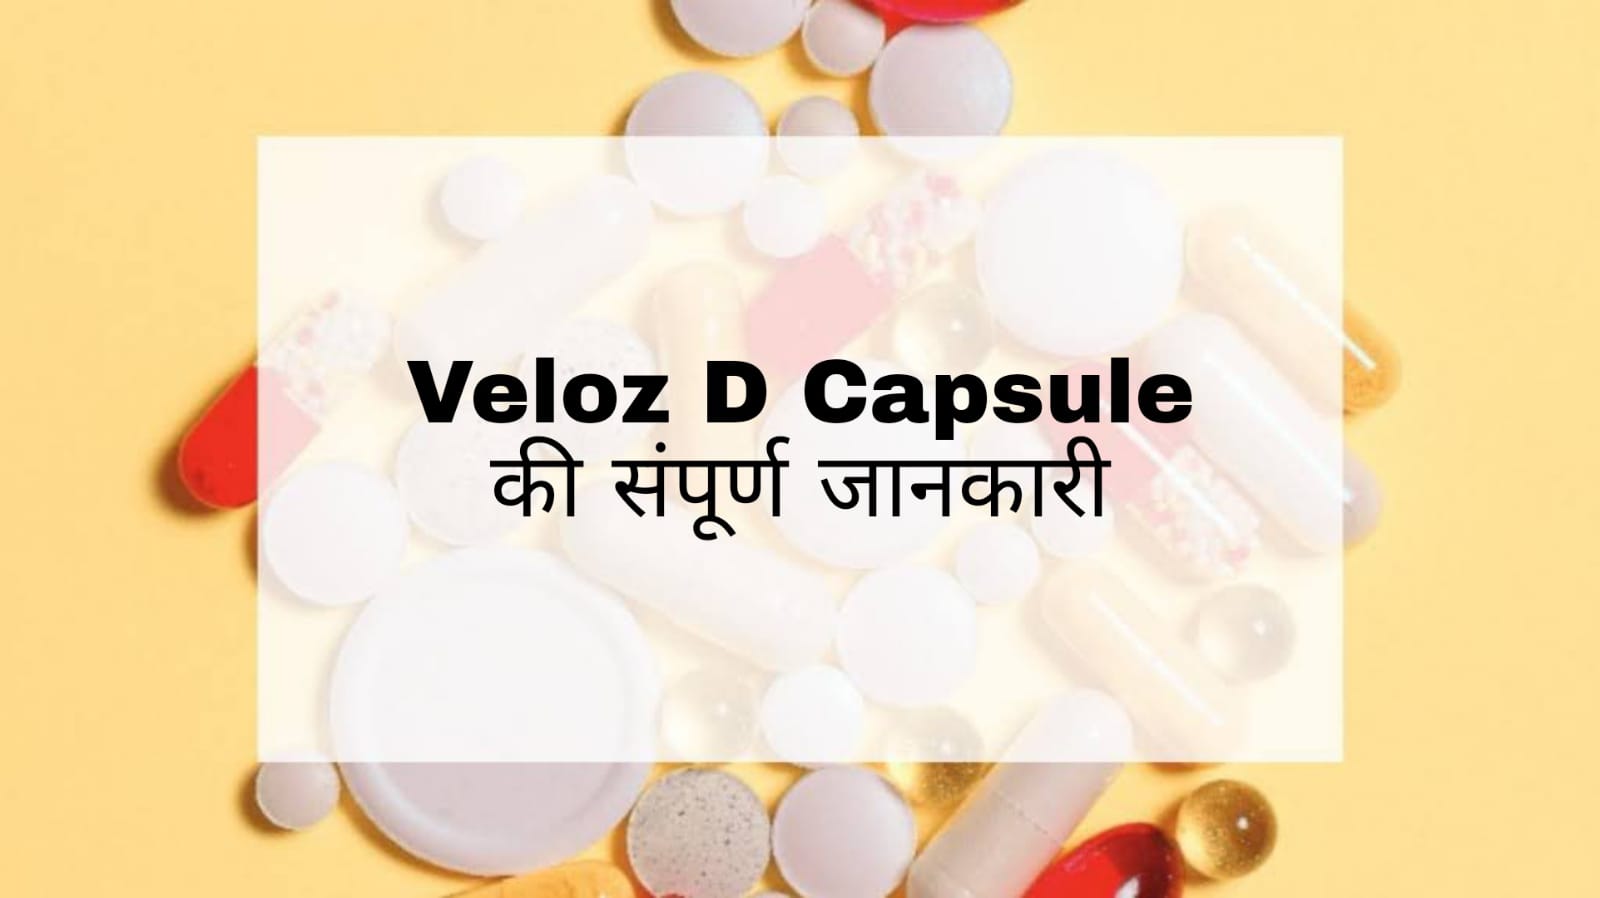 Veloz D Capsule Uses in Hindi